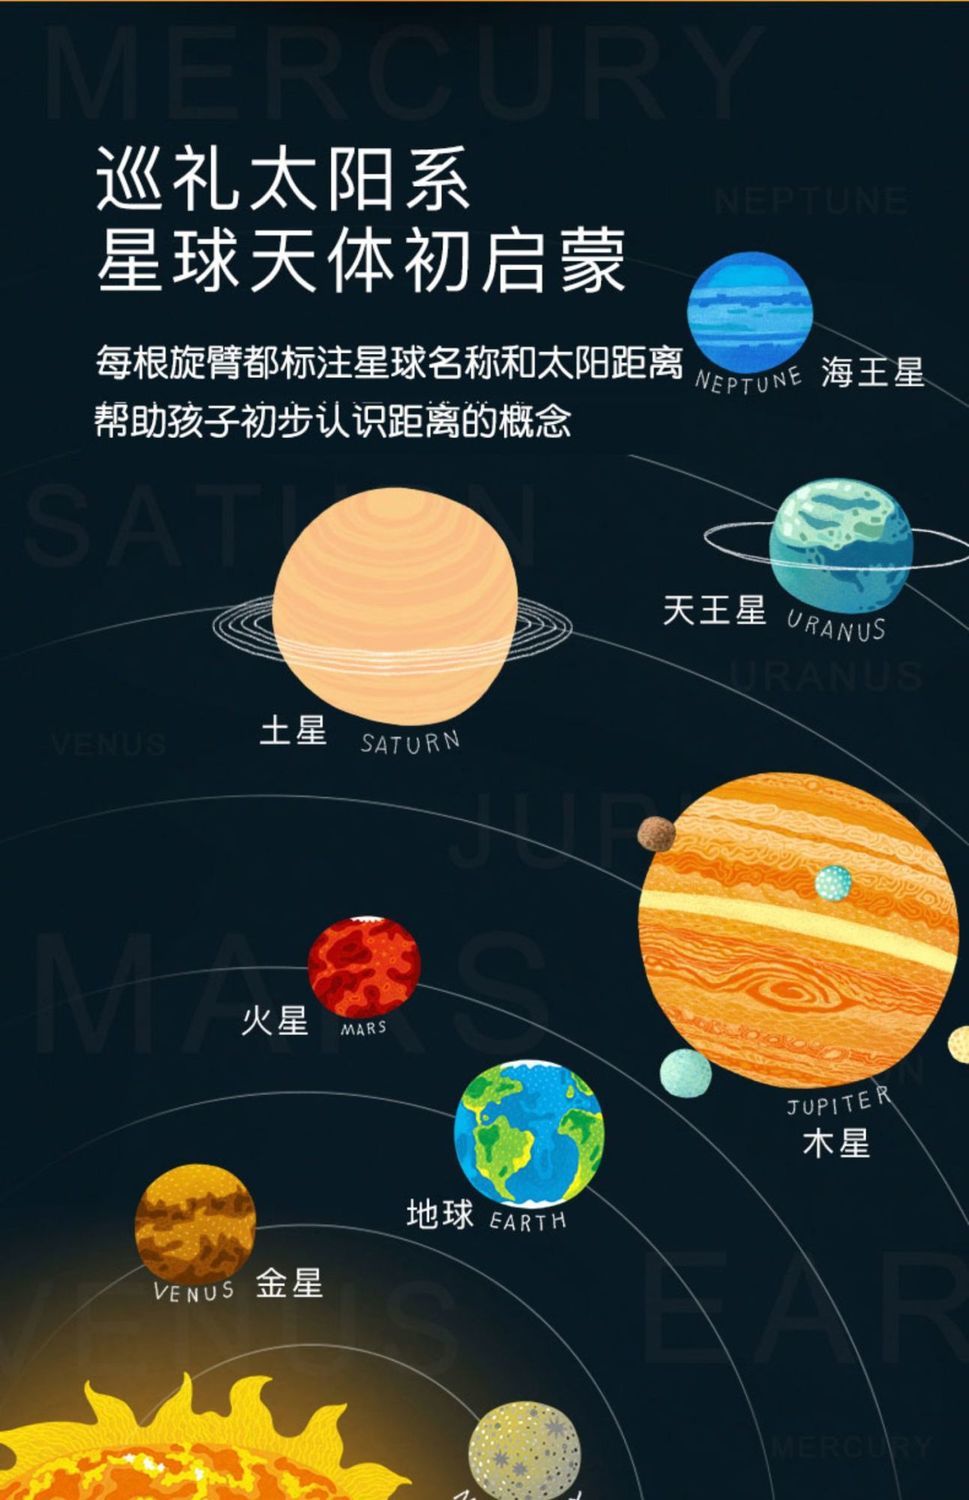 九大行星排列图图片